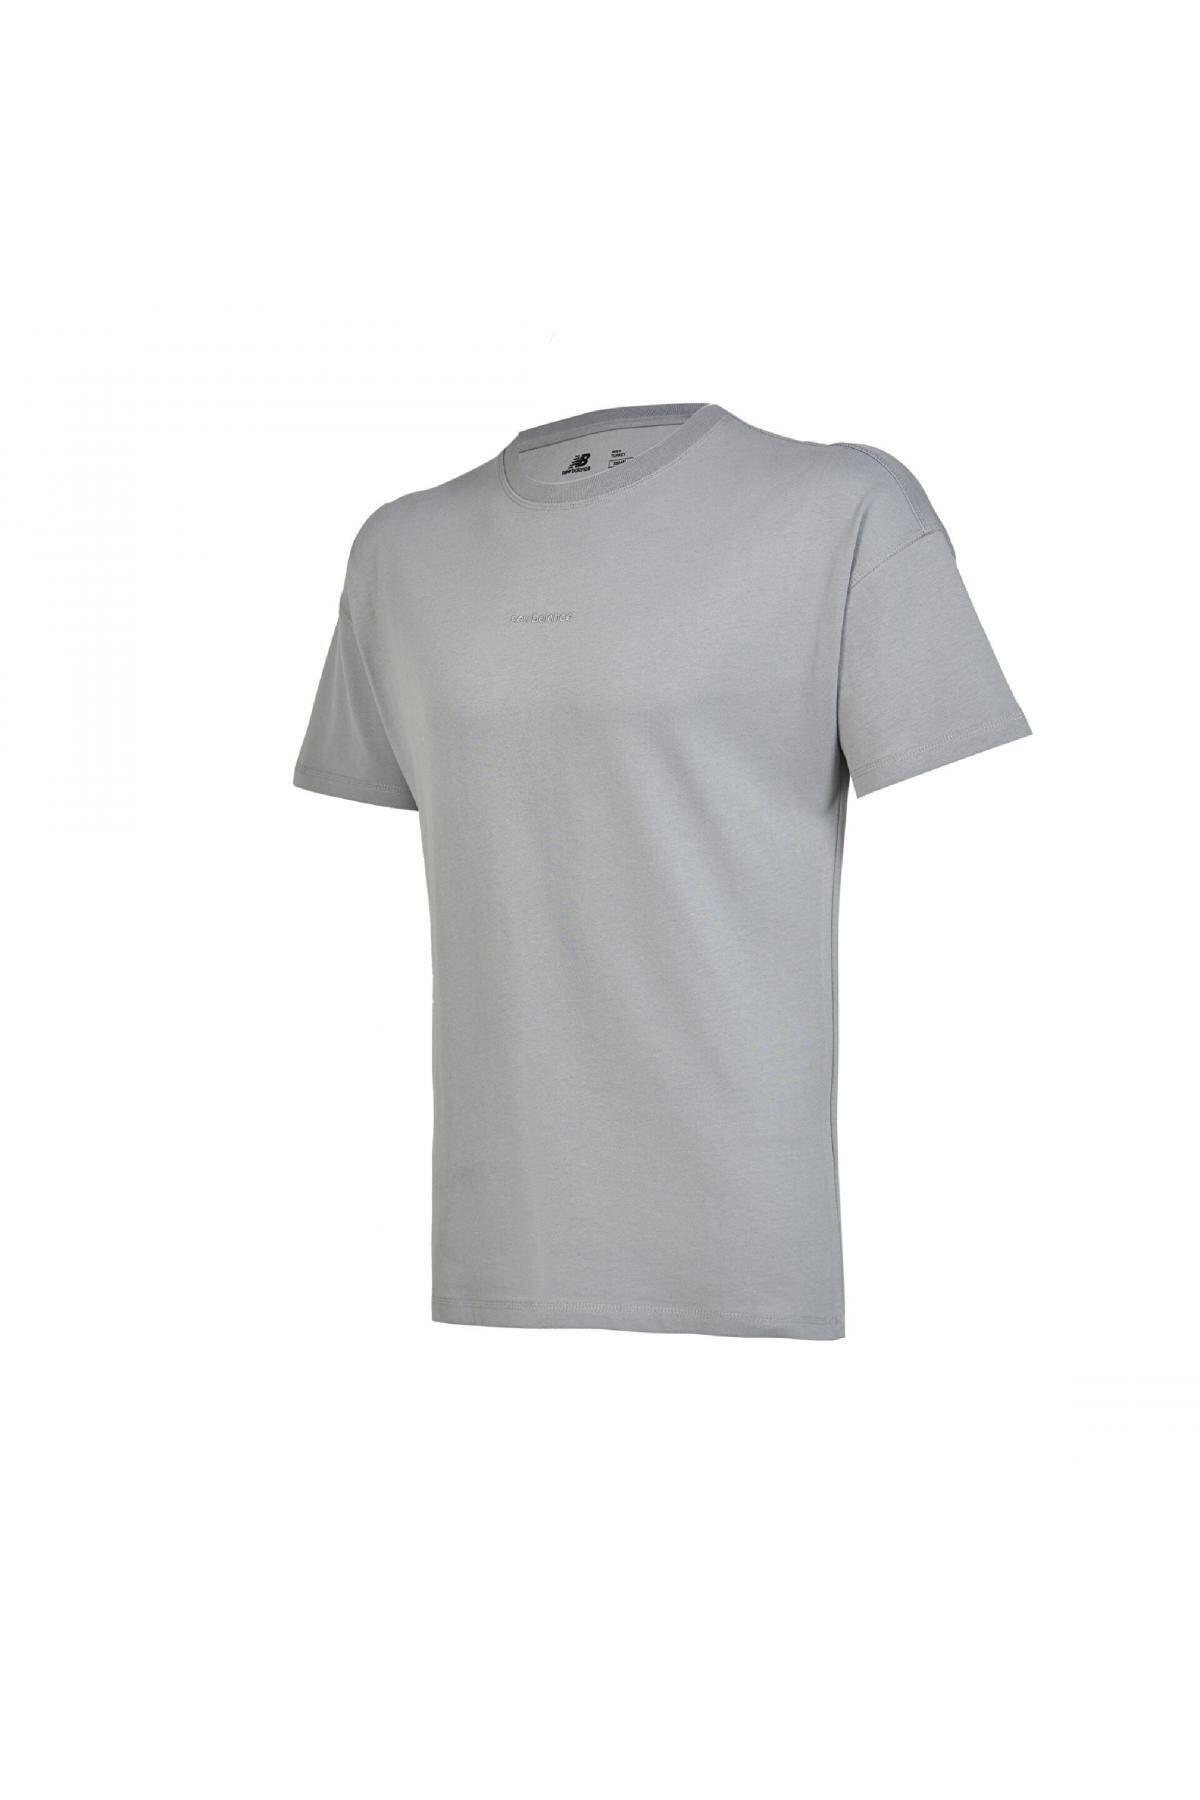 New Balance Unt1366 Nb Unisex Lifestyle Antrasit Unisex T-shirt